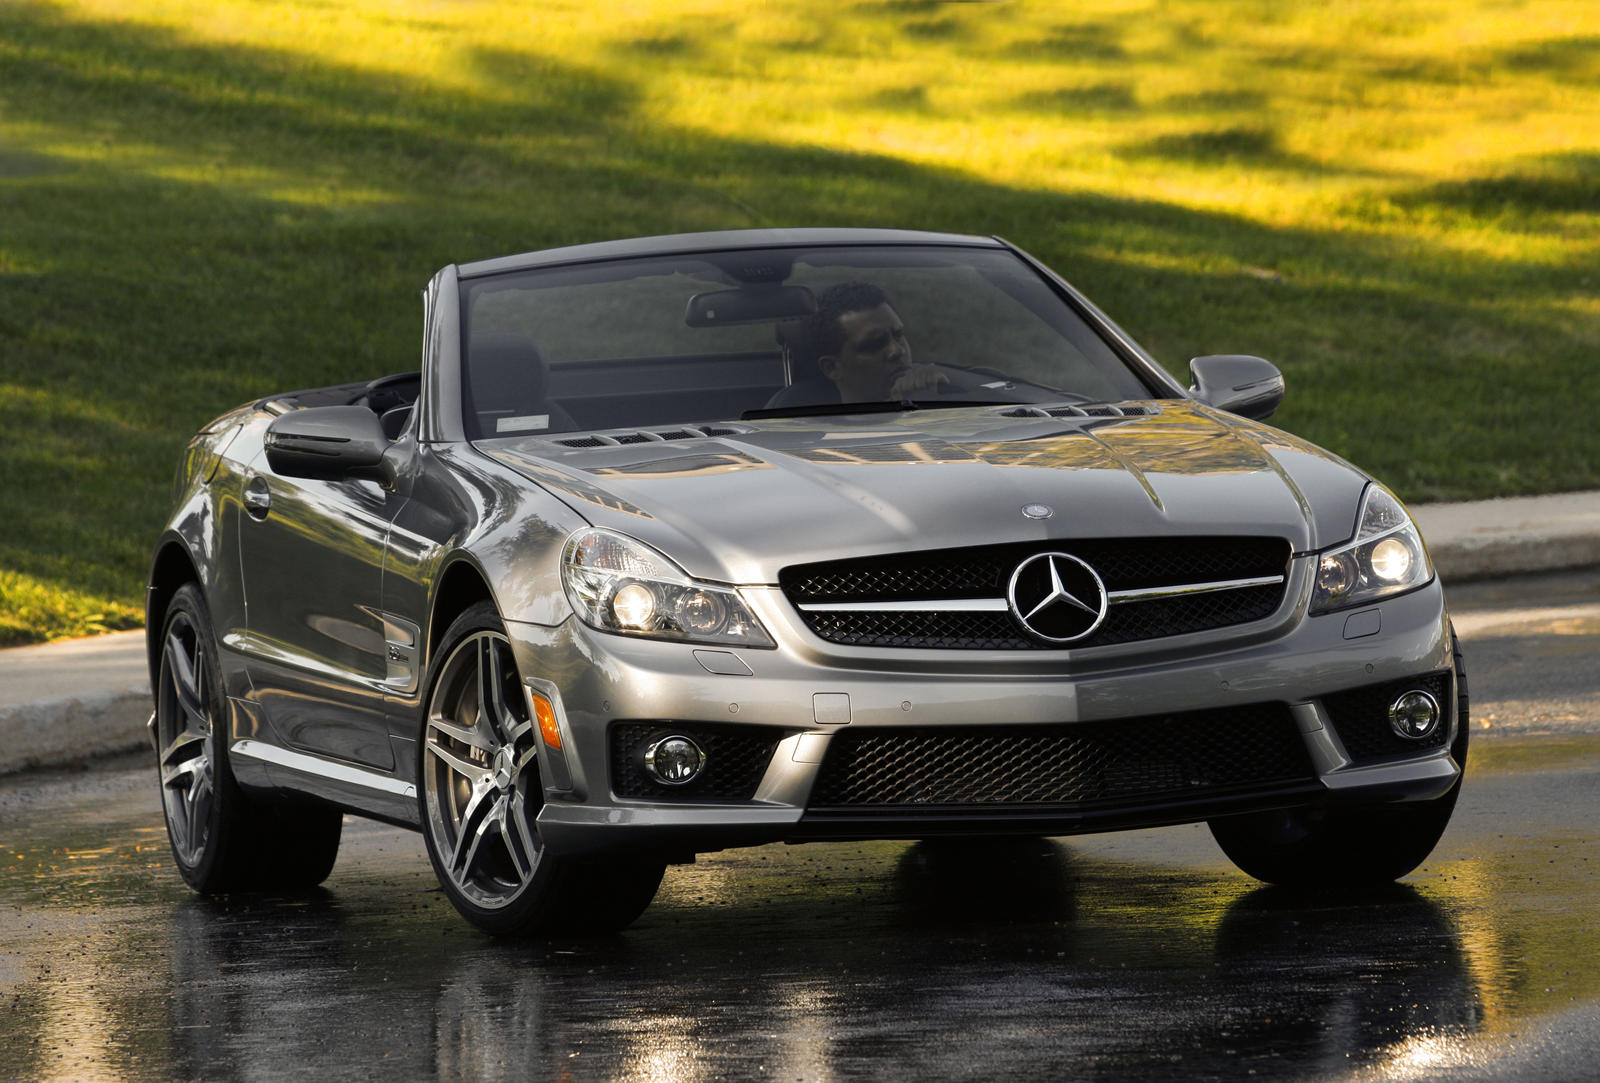  Инновации в внешнем виде и важность для марки Mercedes-Benz 